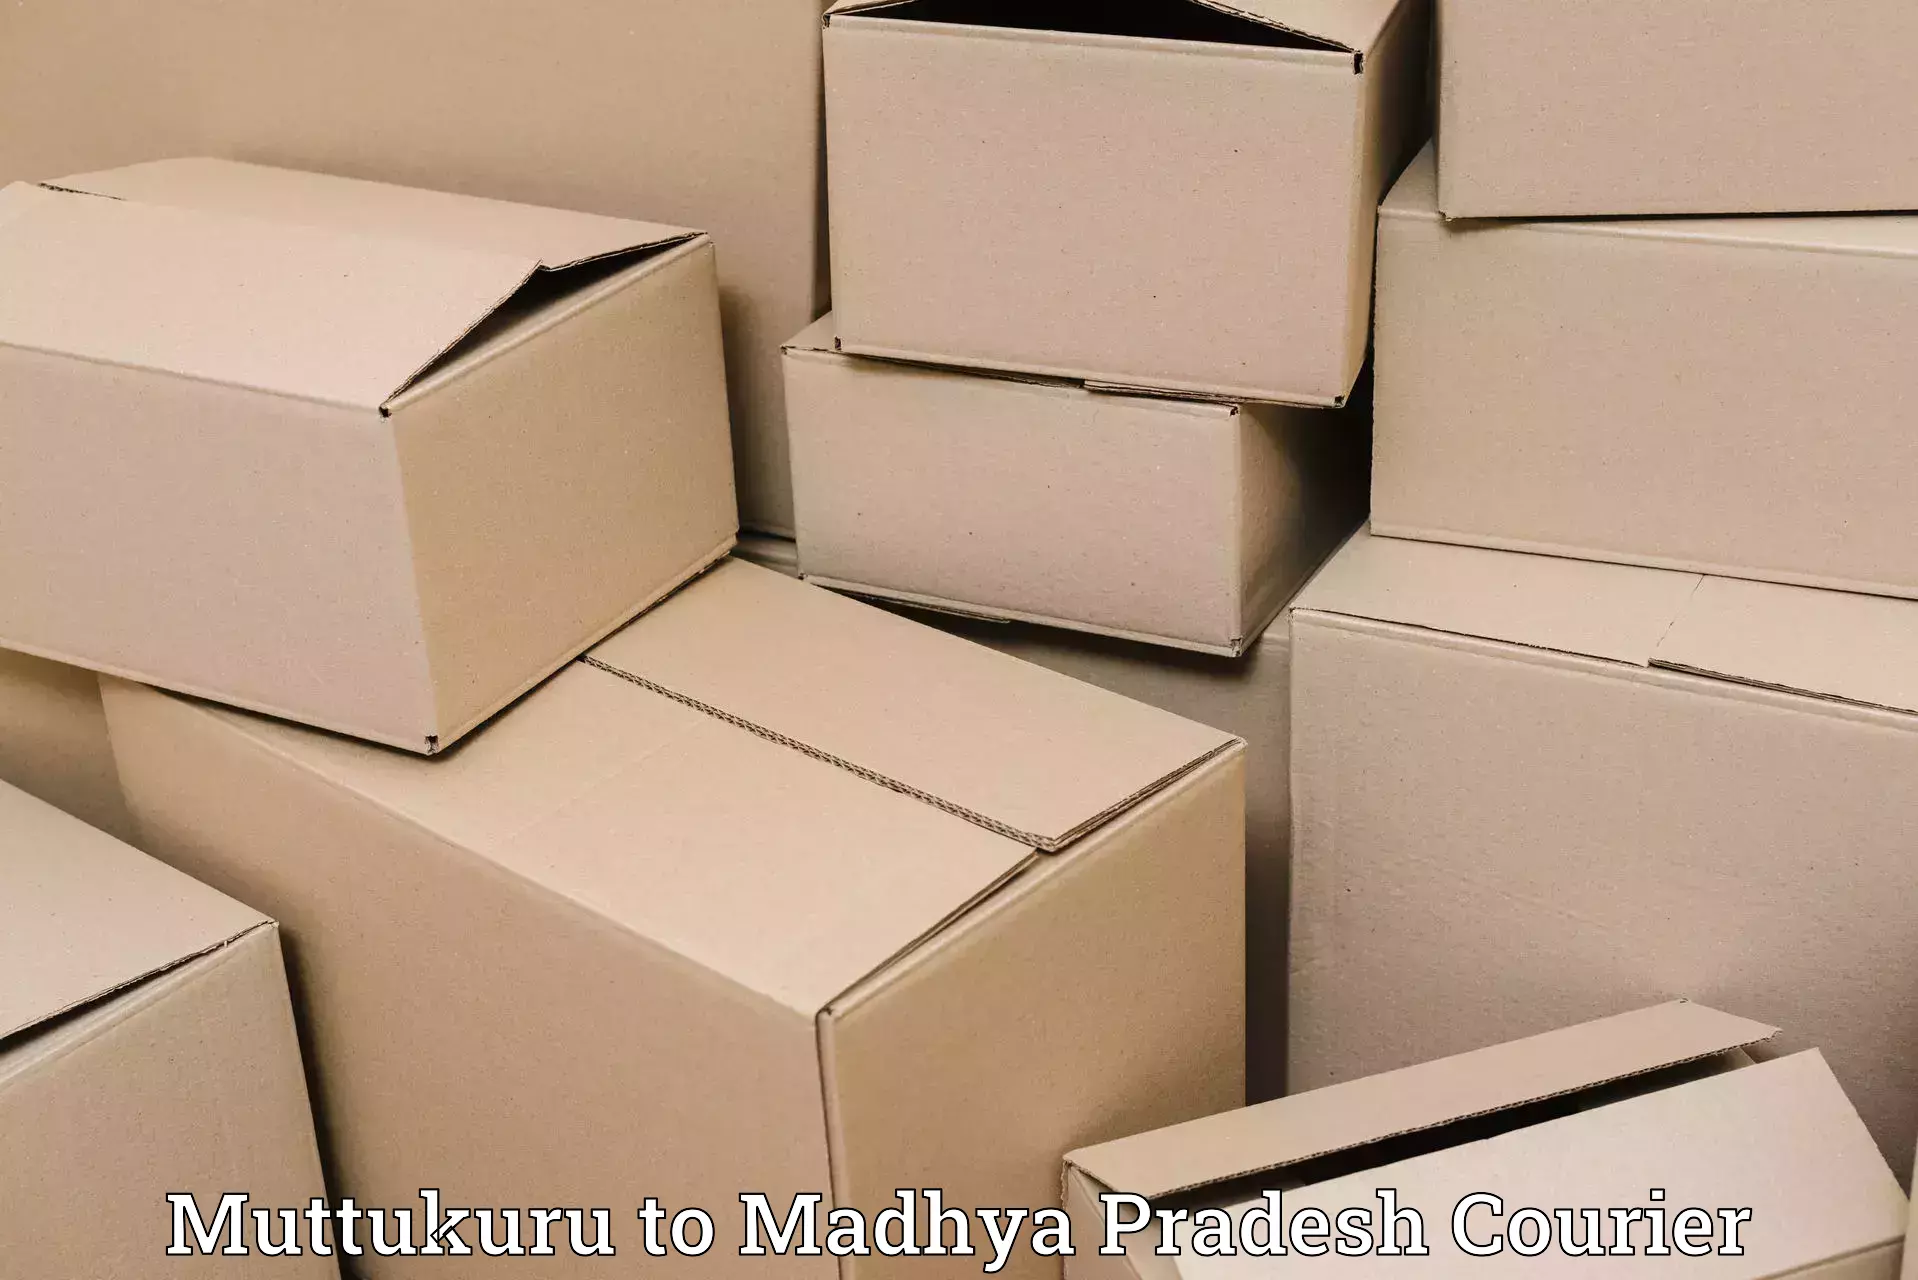 Global courier networks Muttukuru to Umaria